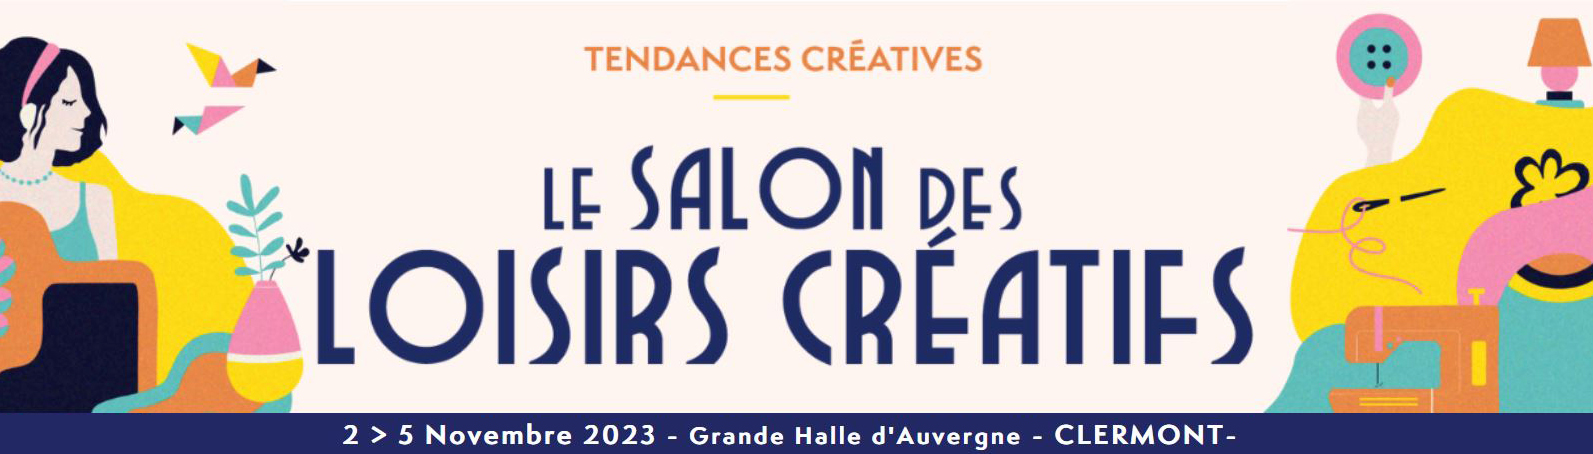 Salon Tendances Créatives de Clermont-Ferrand 2023